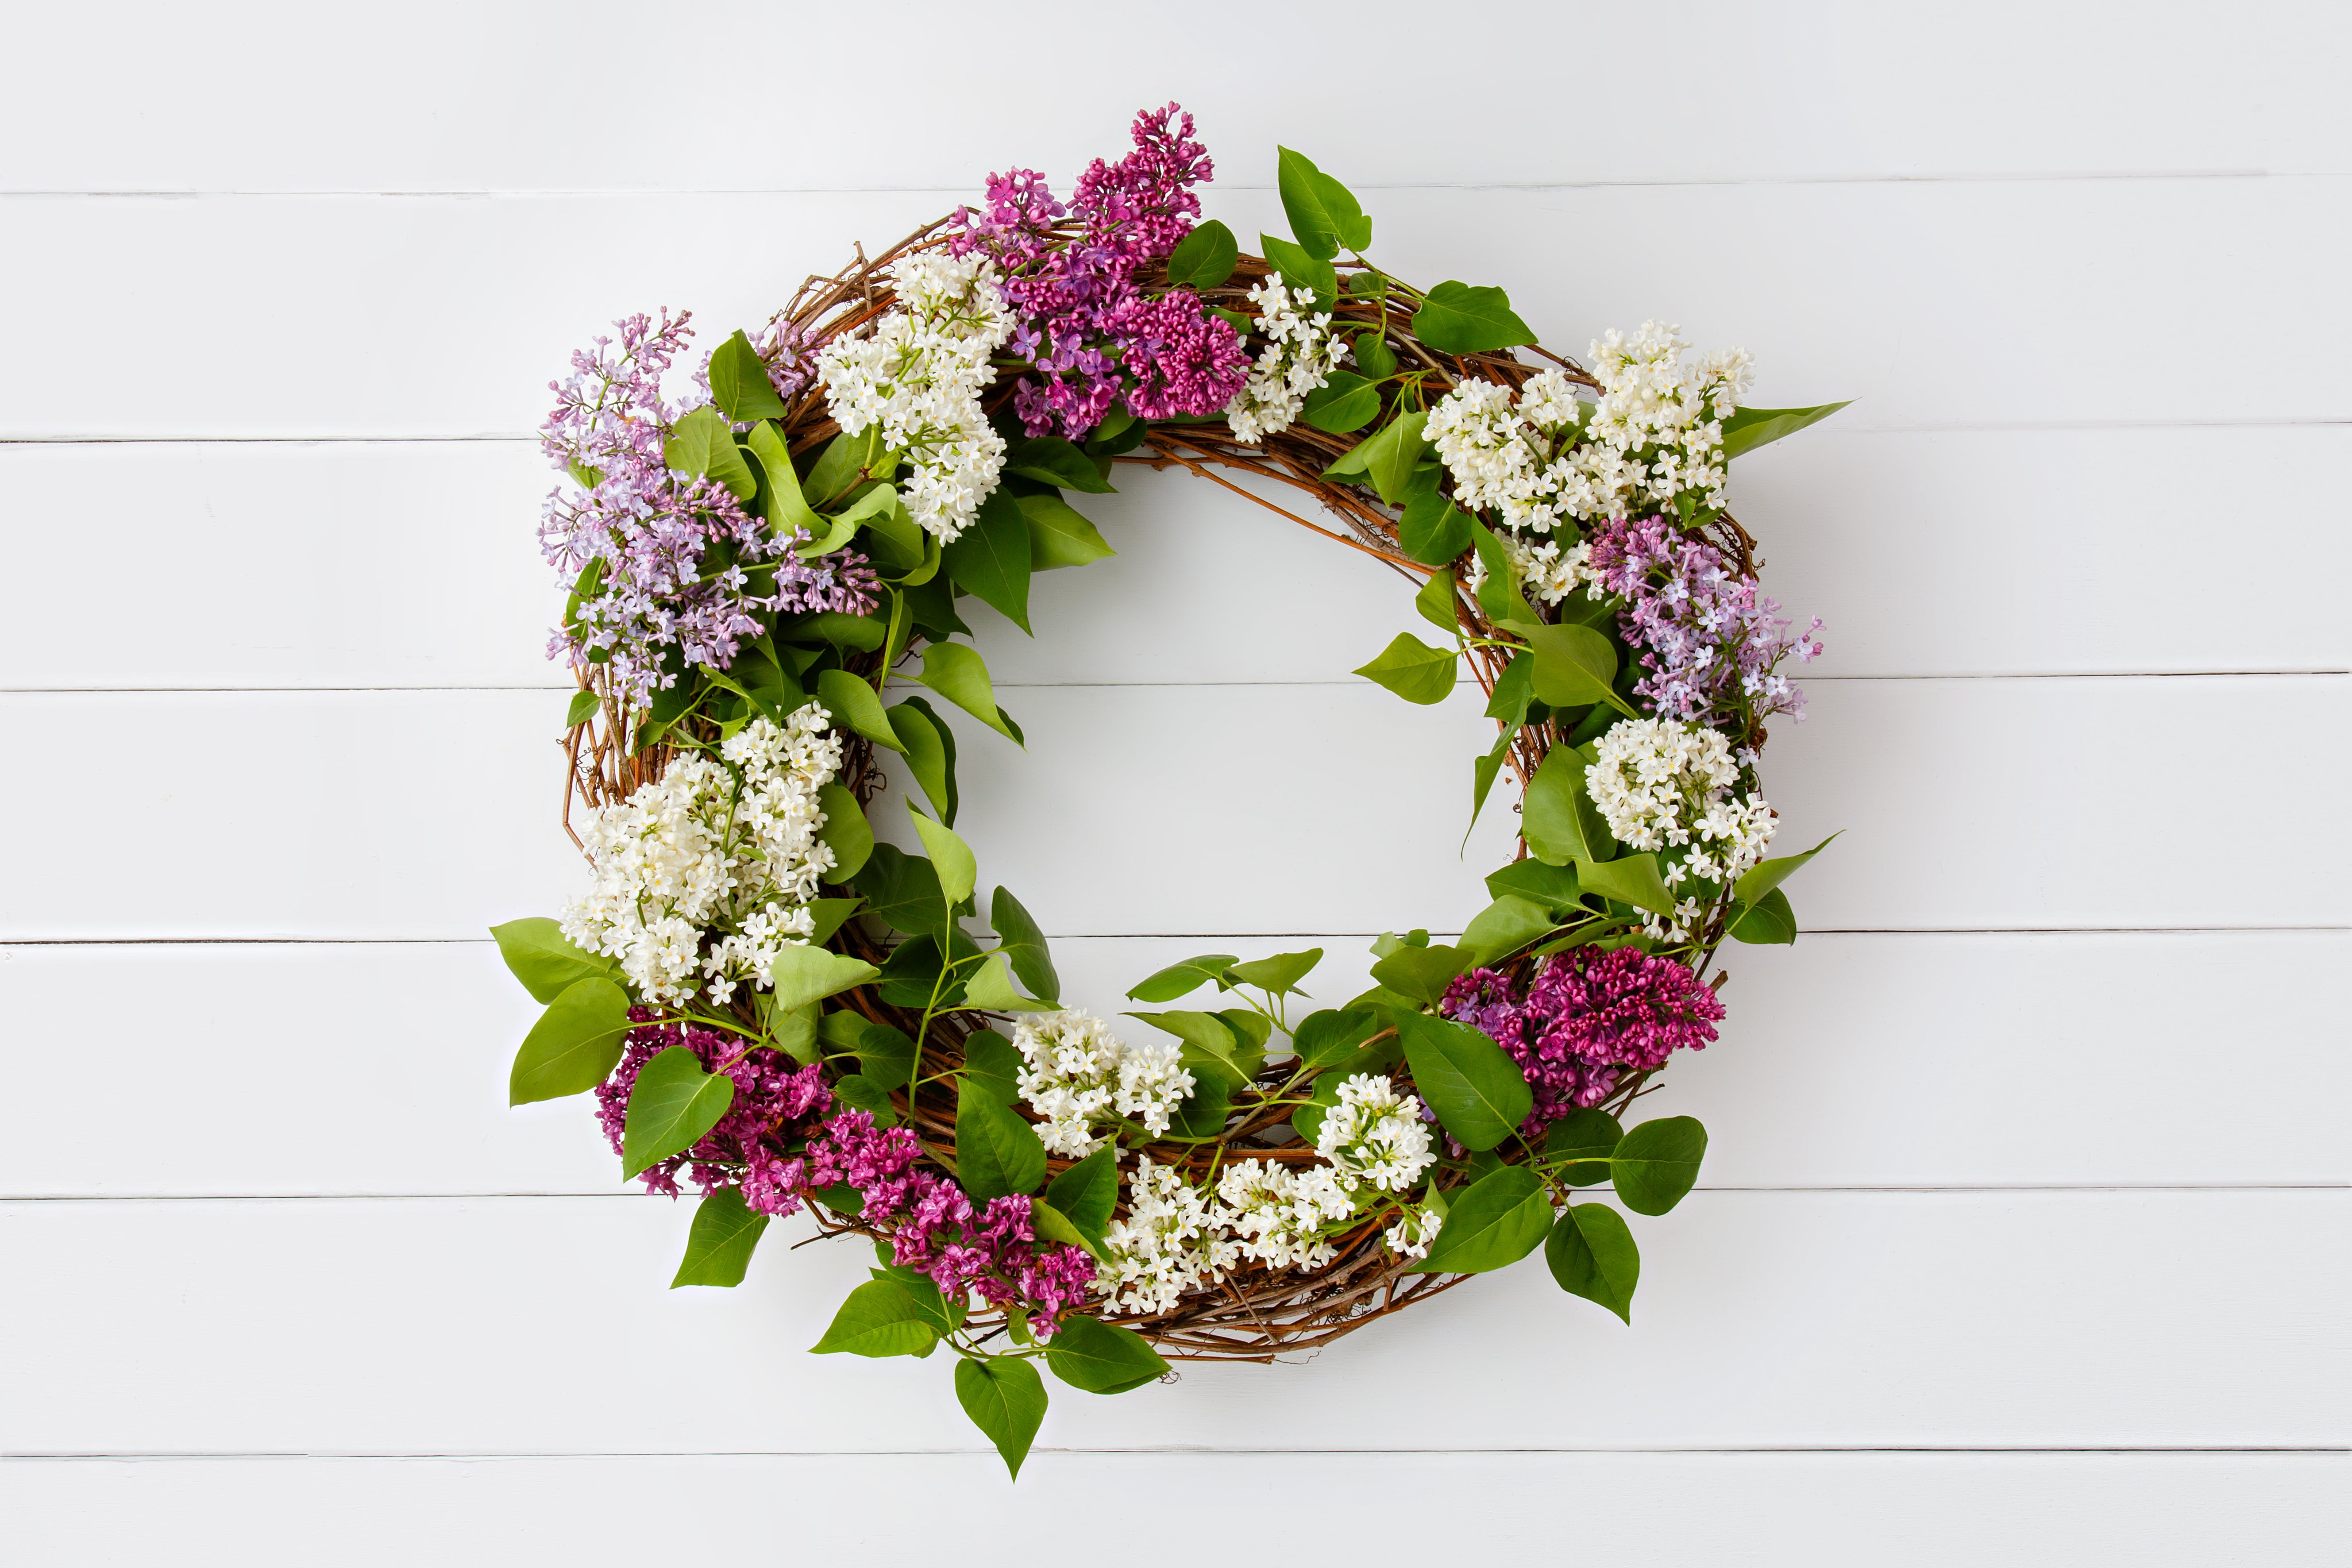 summer wreath made of purple flowers hangs on front door